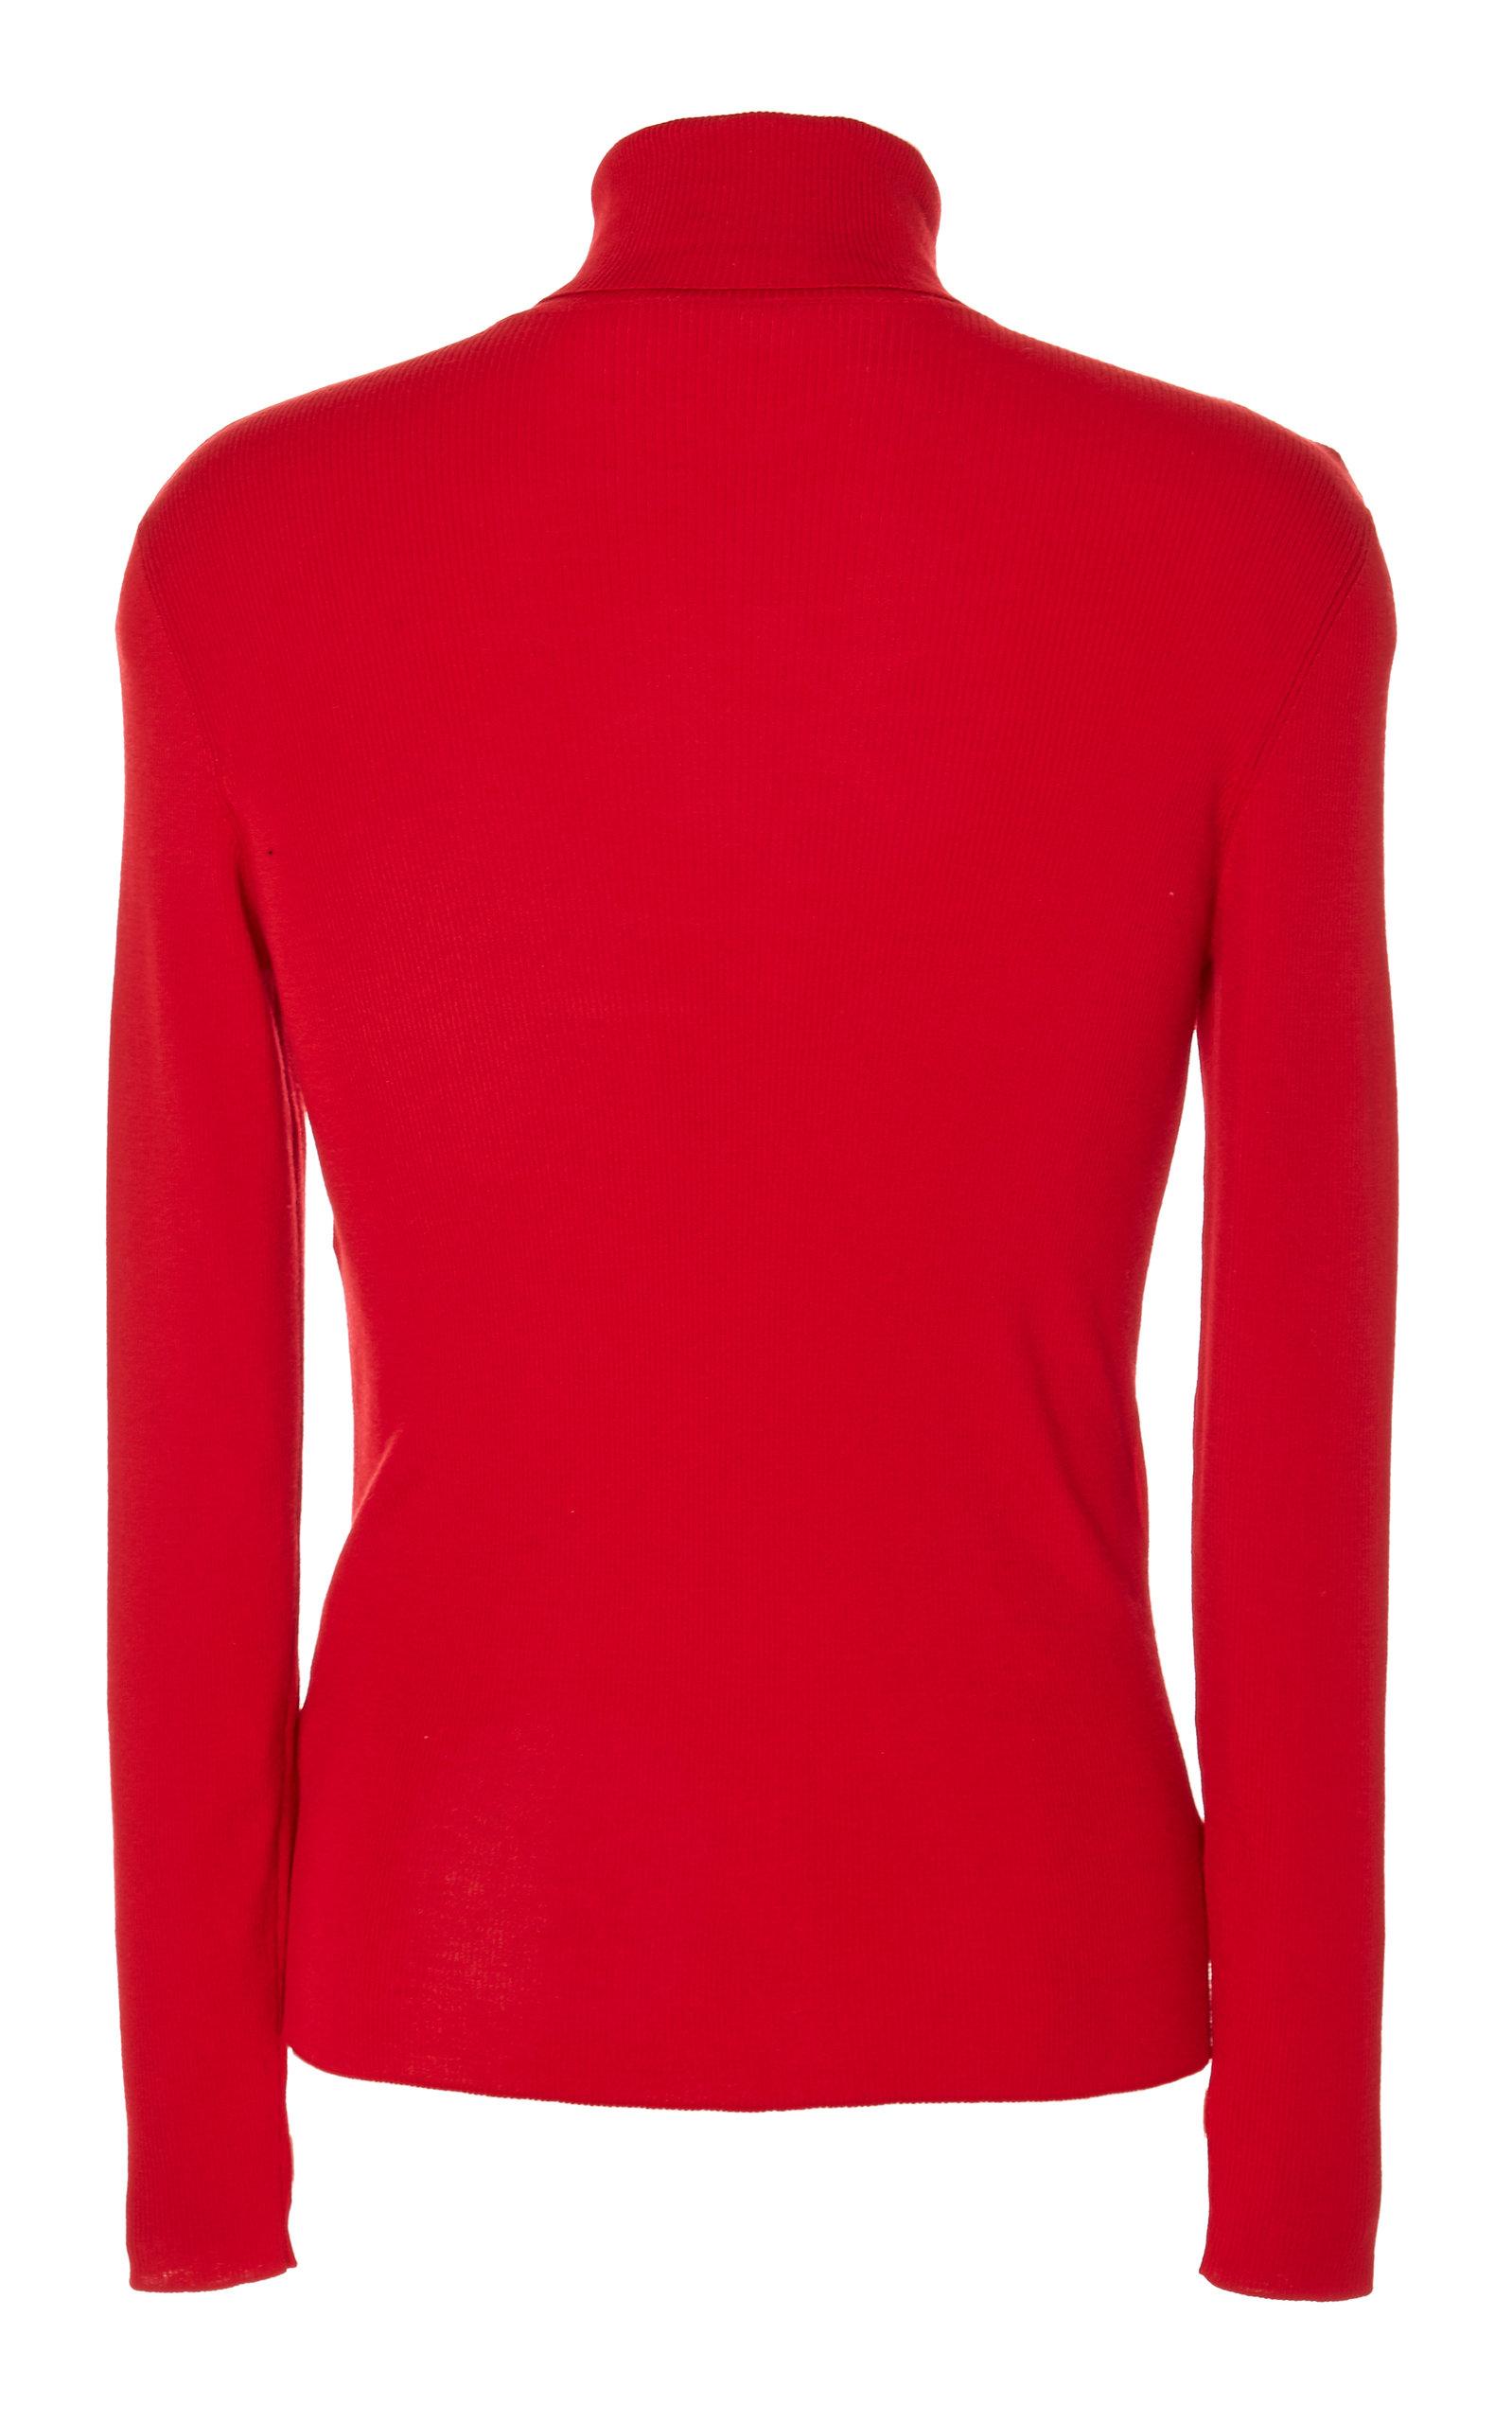 Ralph Lauren Turtleneck Wool Sweater in Red for Men - Lyst